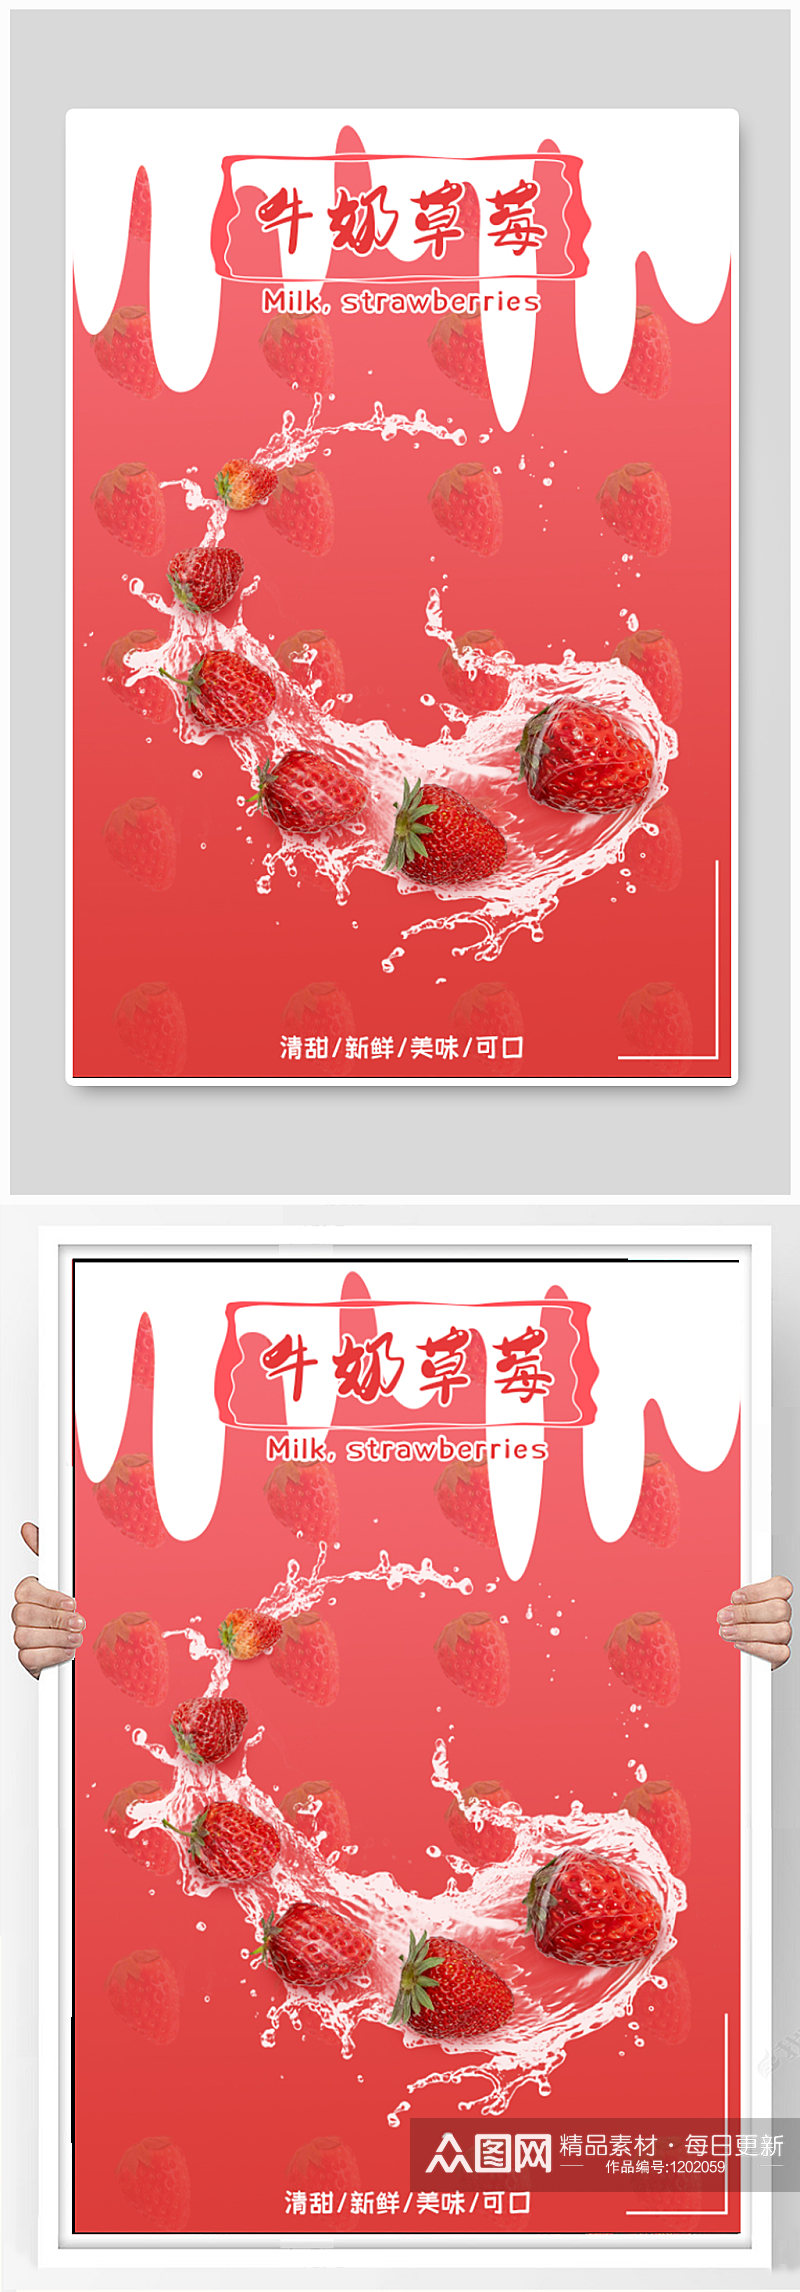 牛奶草莓水果促销海报素材